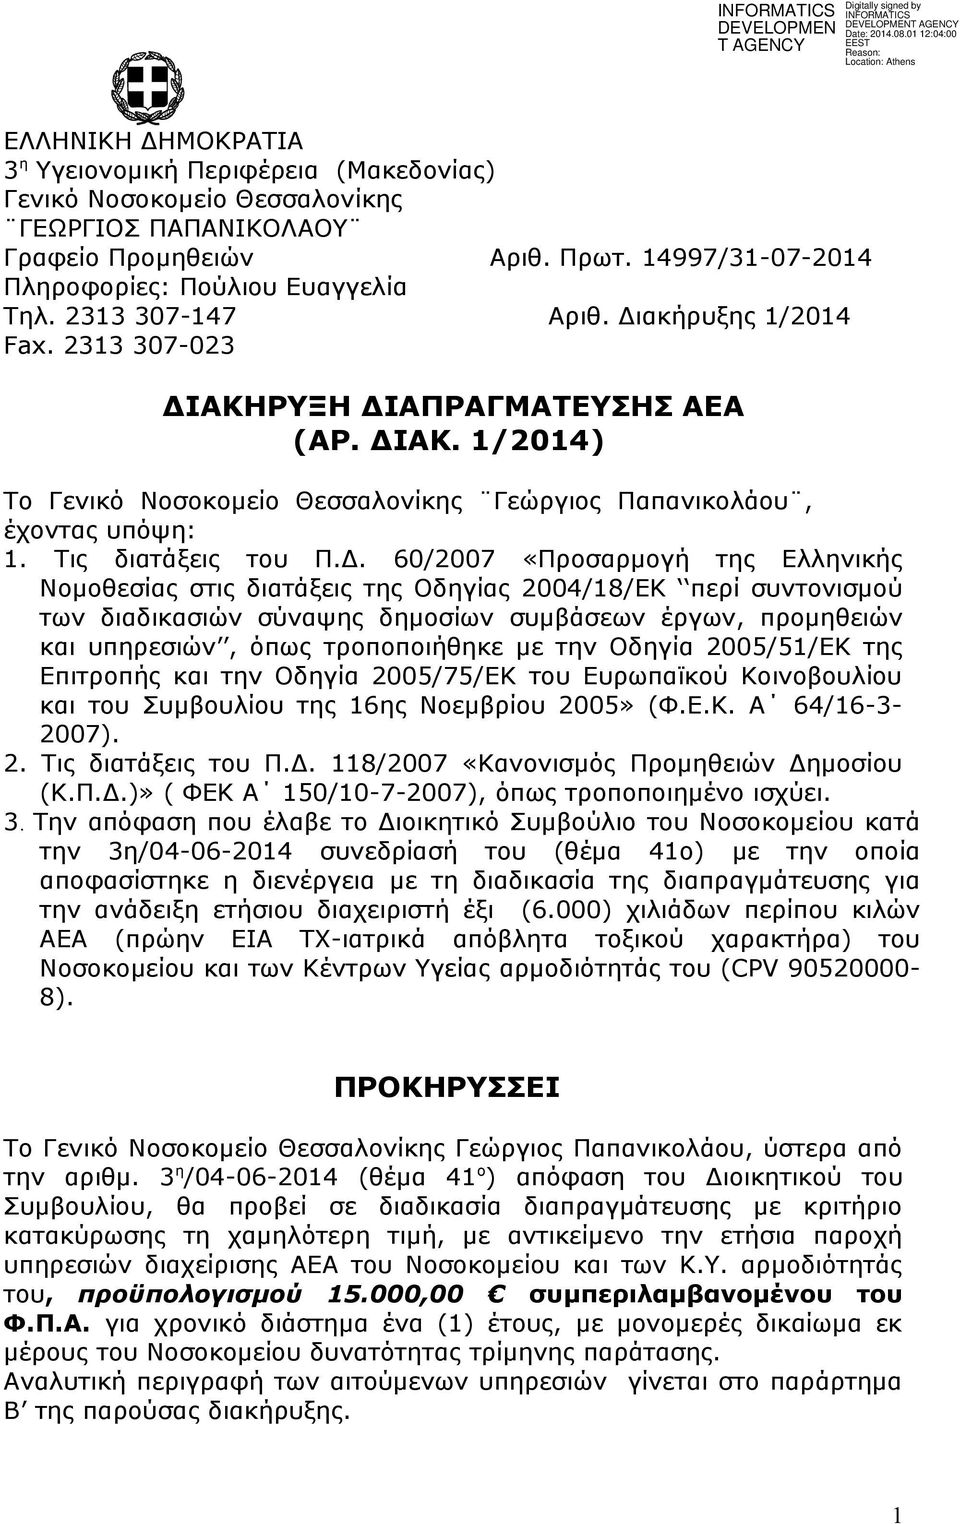 Δ. 60/2007 «Προσαρμογή της Ελληνικής Νομοθεσίας στις διατάξεις της Οδηγίας 2004/18/ΕΚ περί συντονισμού των διαδικασιών σύναψης δημοσίων συμβάσεων έργων, προμηθειών και υπηρεσιών, όπως τροποποιήθηκε